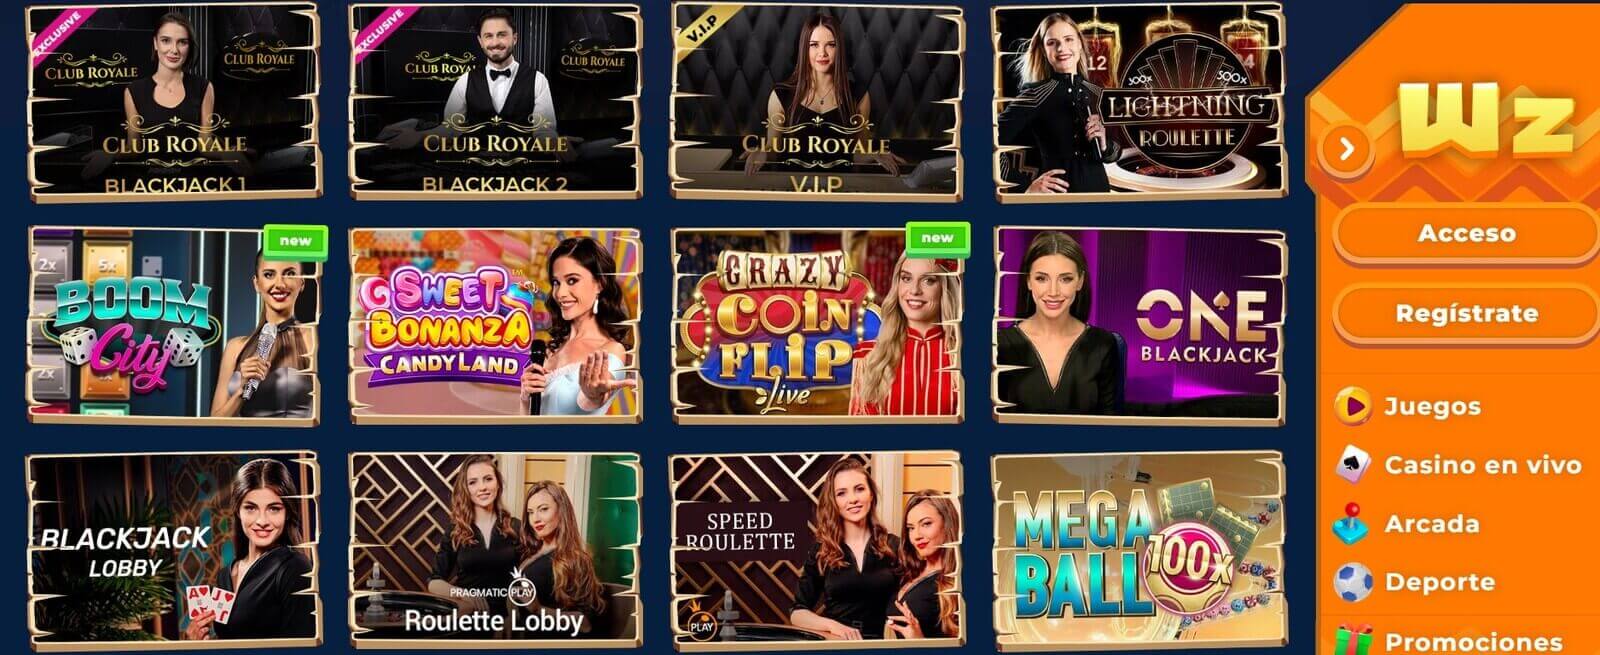 Juegos de casino en vivo de Wazamba online en Chile y Perú